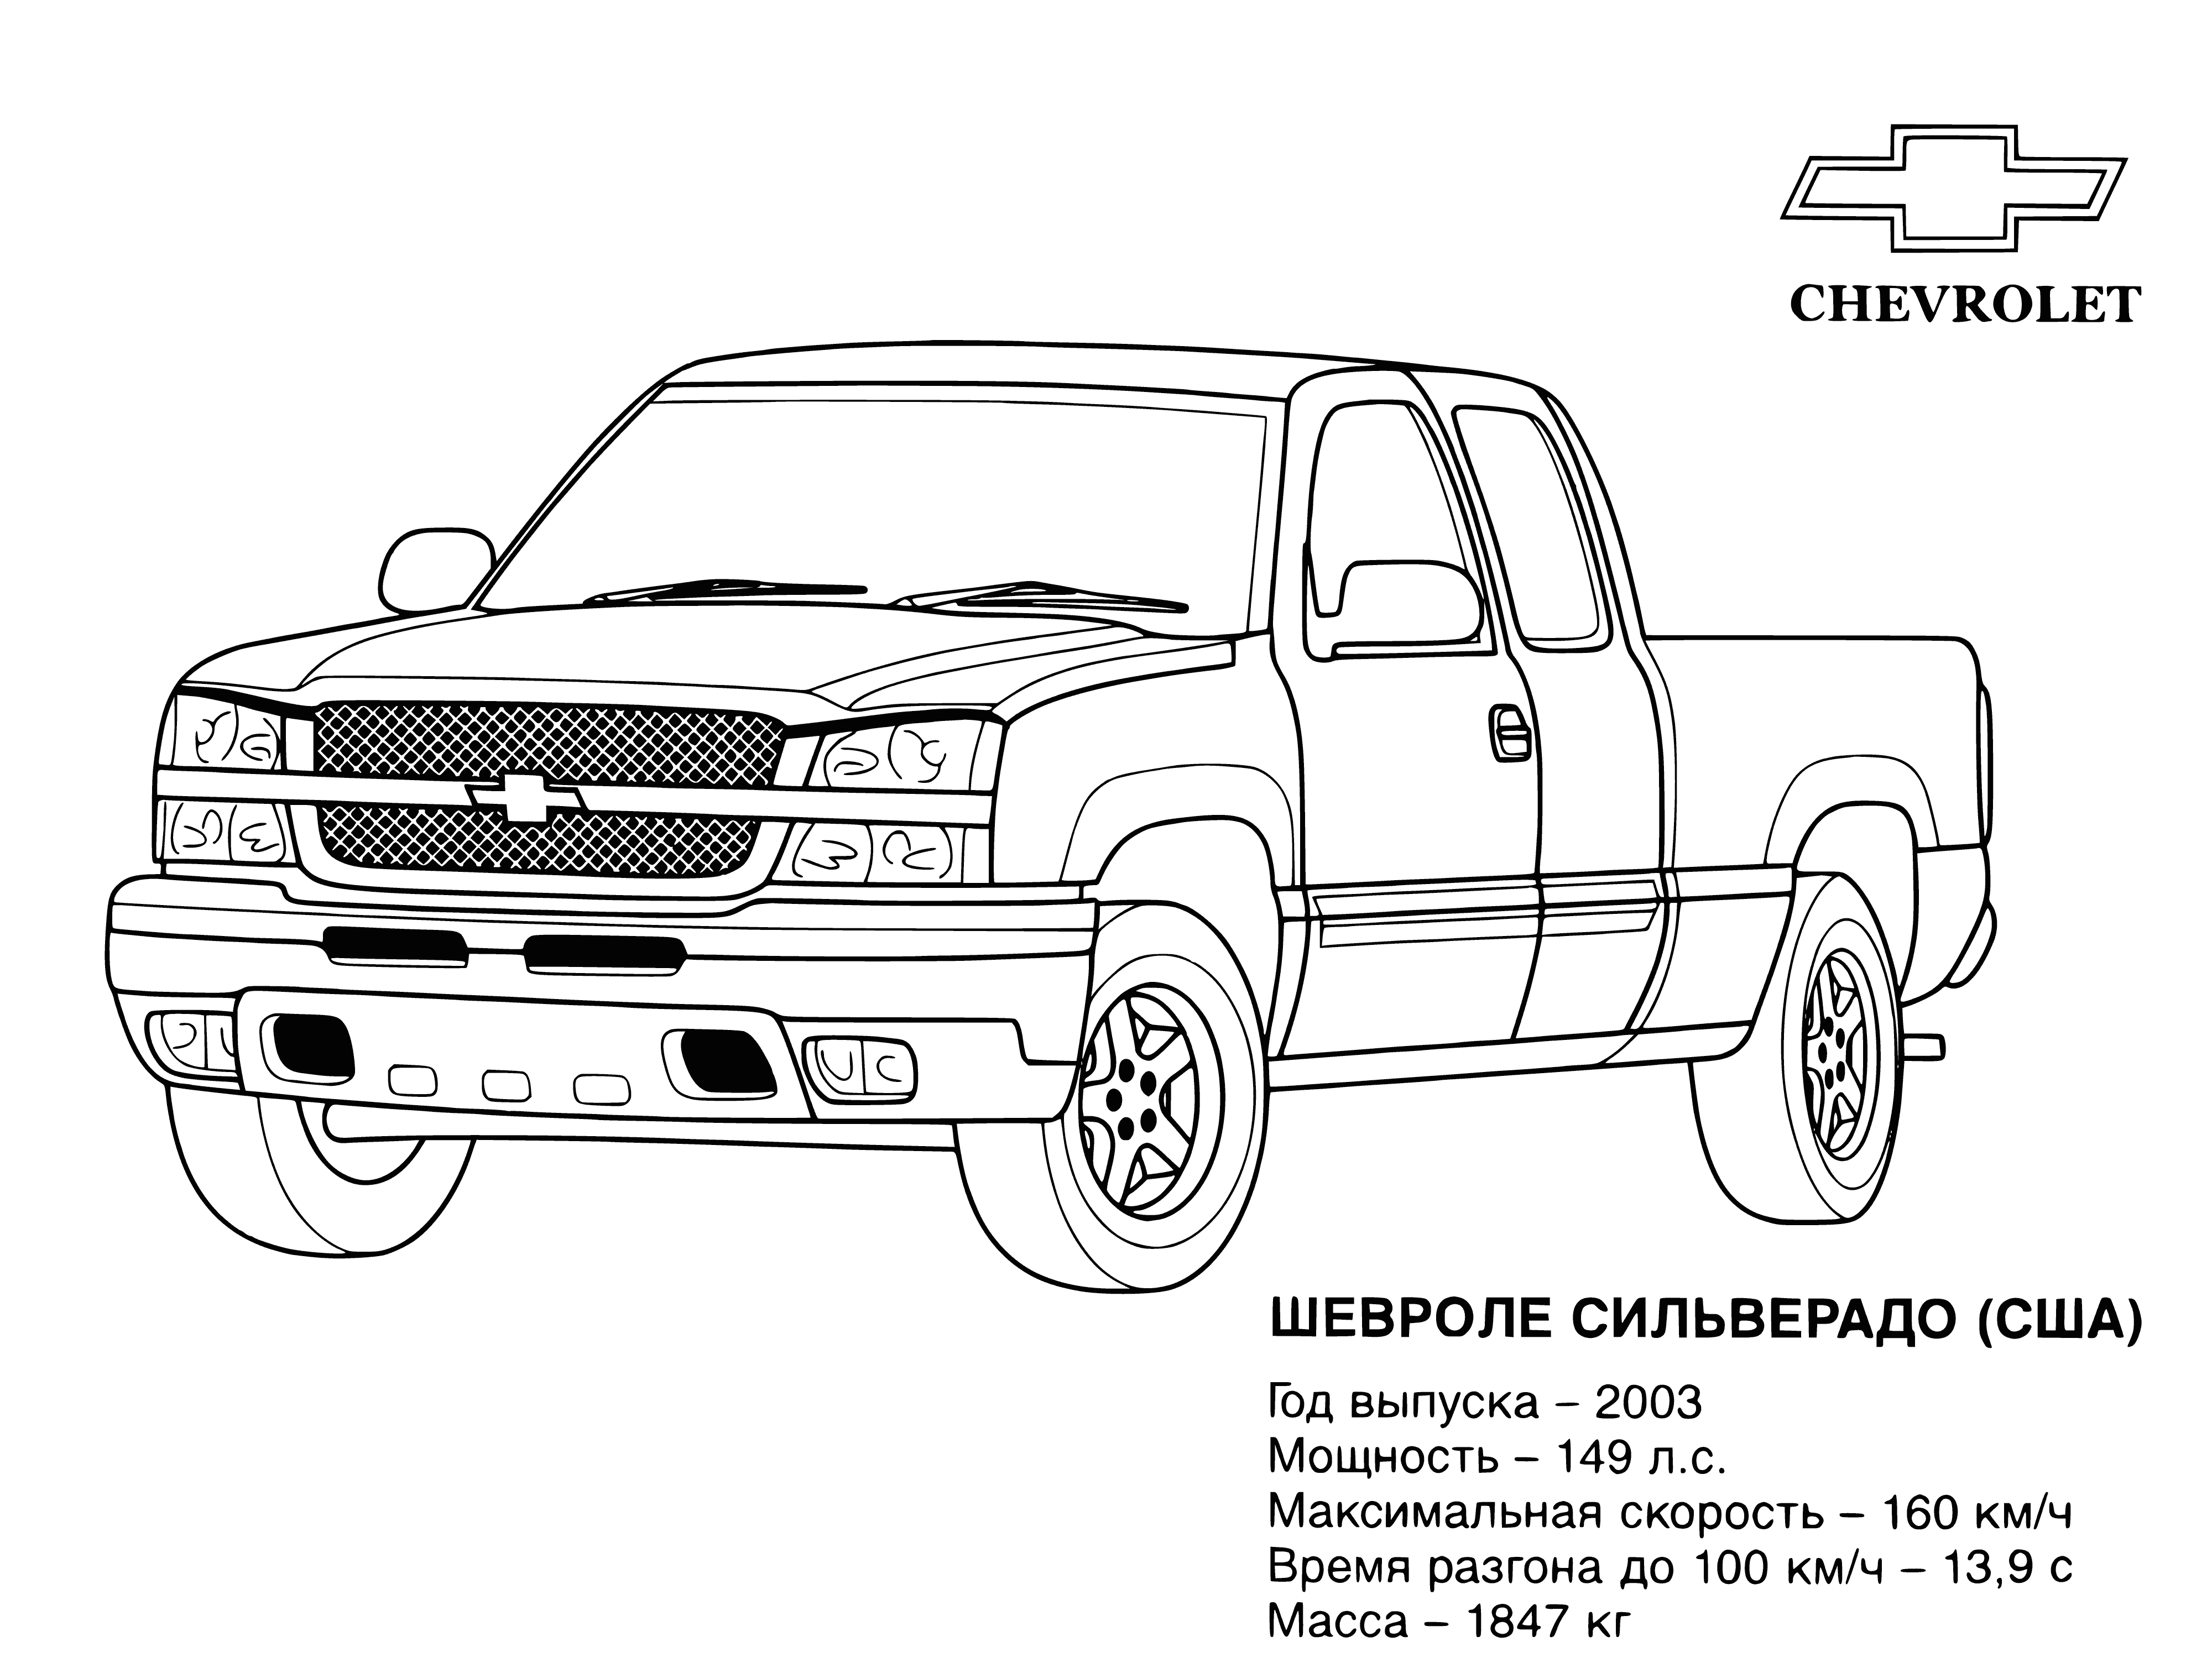 Chevrolet (États-Unis) coloriage